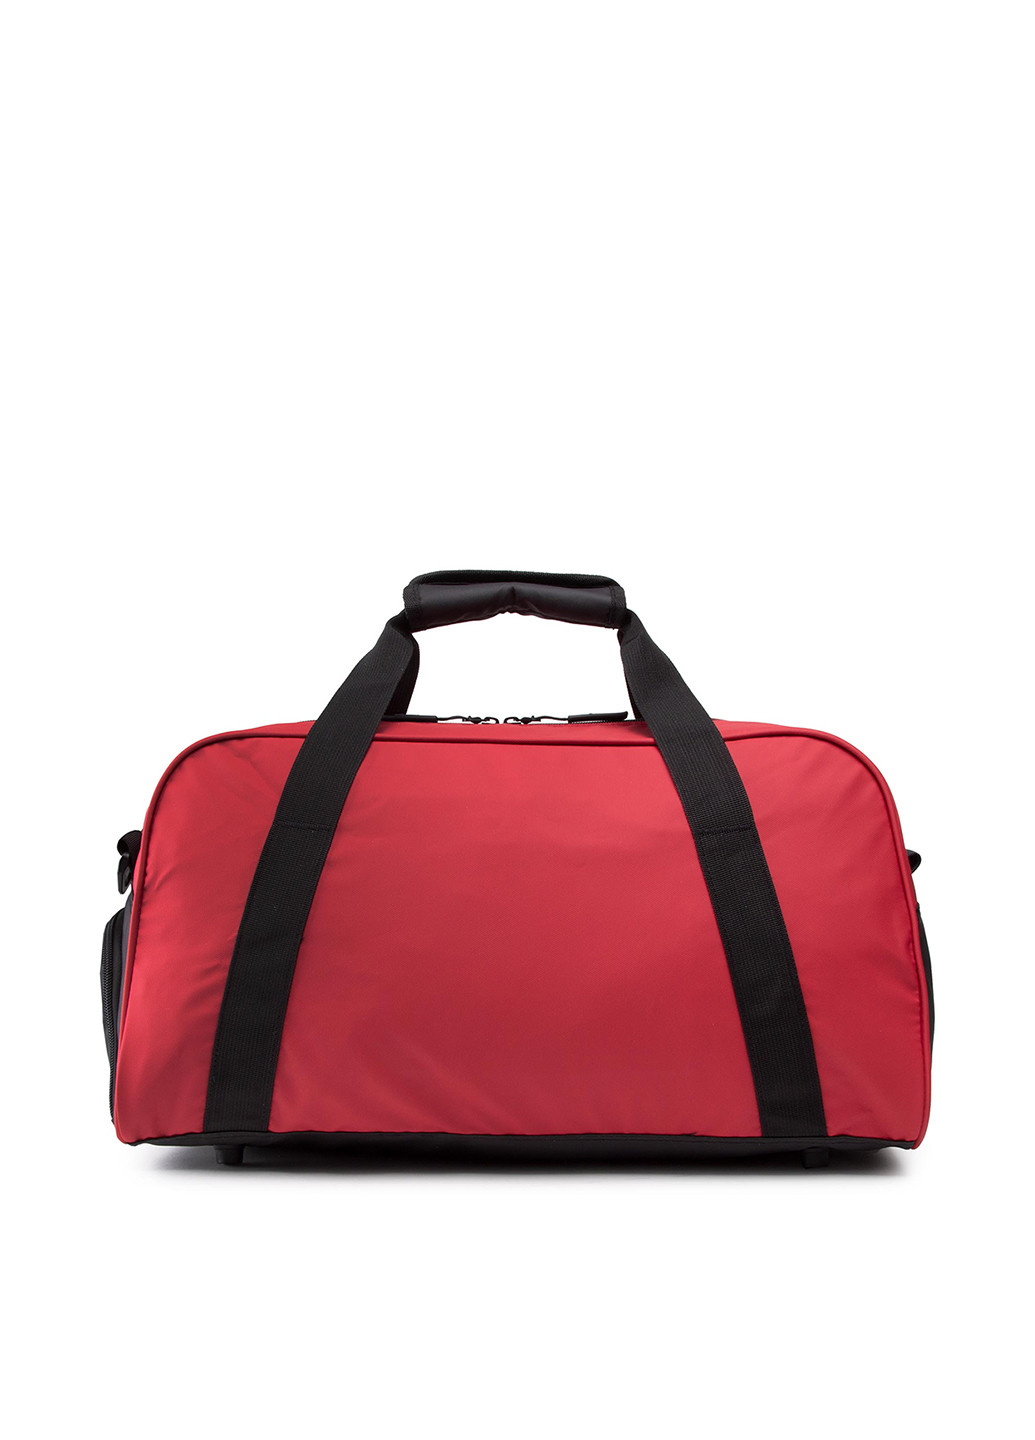 Подорожня сумка Sprandi BST-S-077-30-05 однотонна червона спортивна